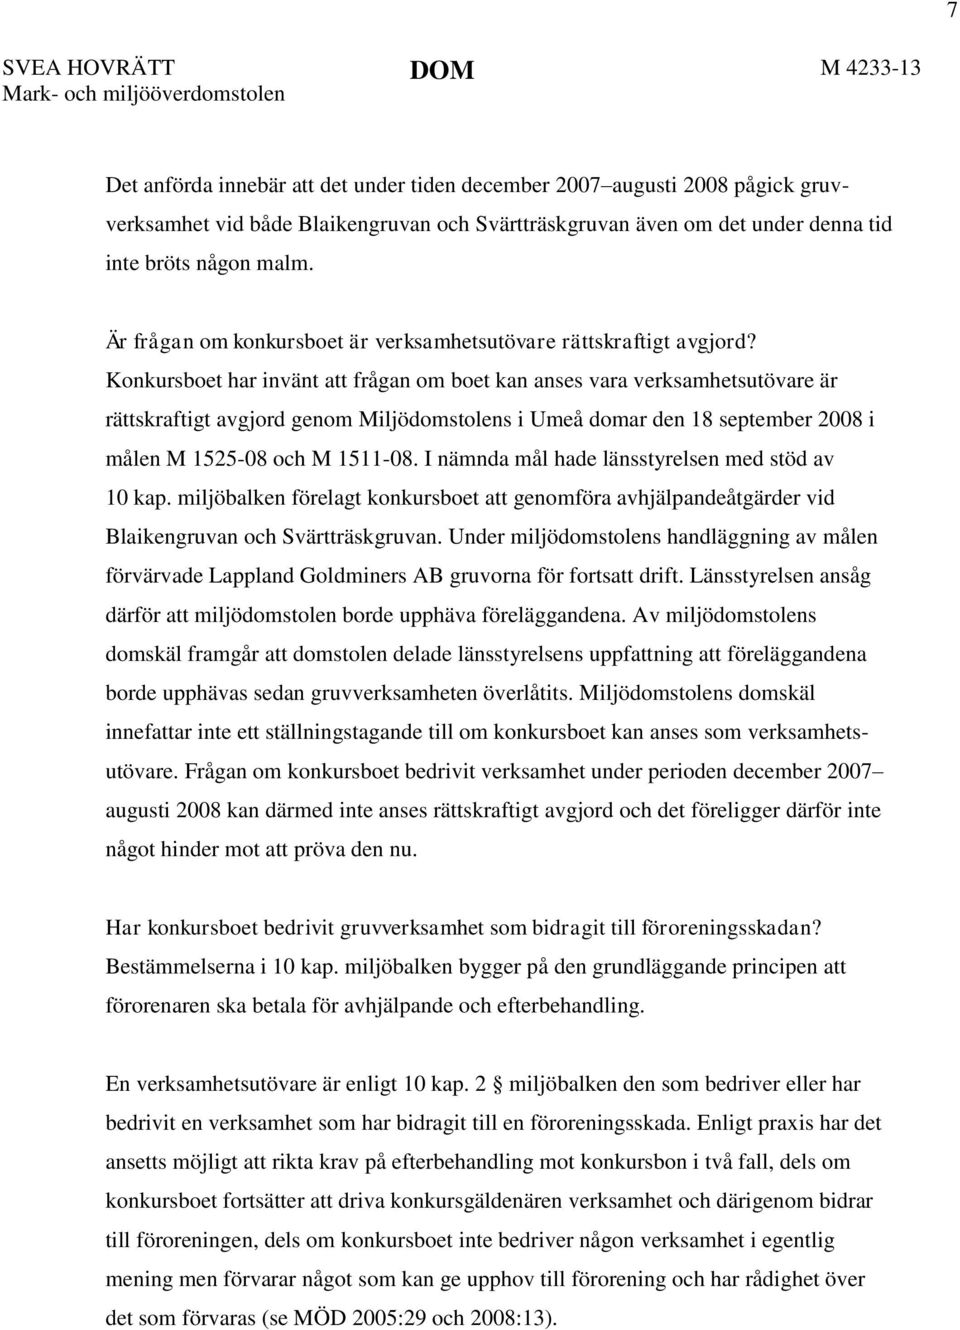 Konkursboet har invänt att frågan om boet kan anses vara verksamhetsutövare är rättskraftigt avgjord genom Miljödomstolens i Umeå domar den 18 september 2008 i målen M 1525-08 och M 1511-08.